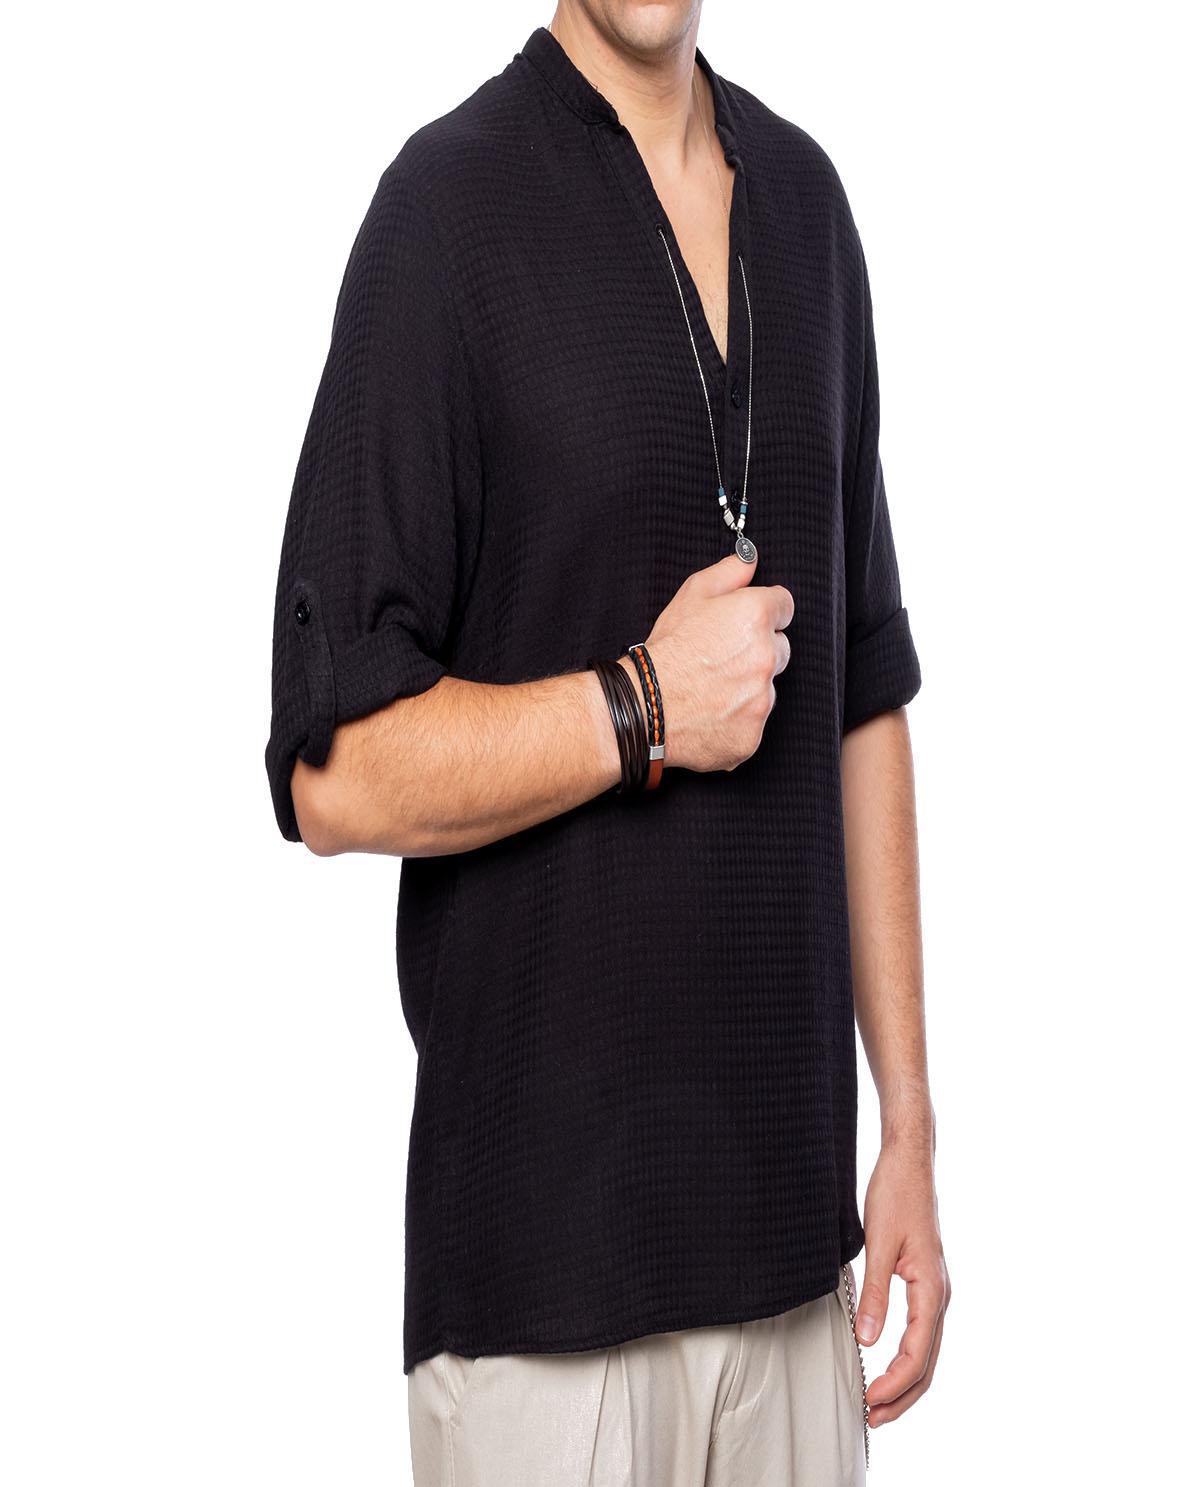 T-shirt manches longues noir avec accessoire en coton